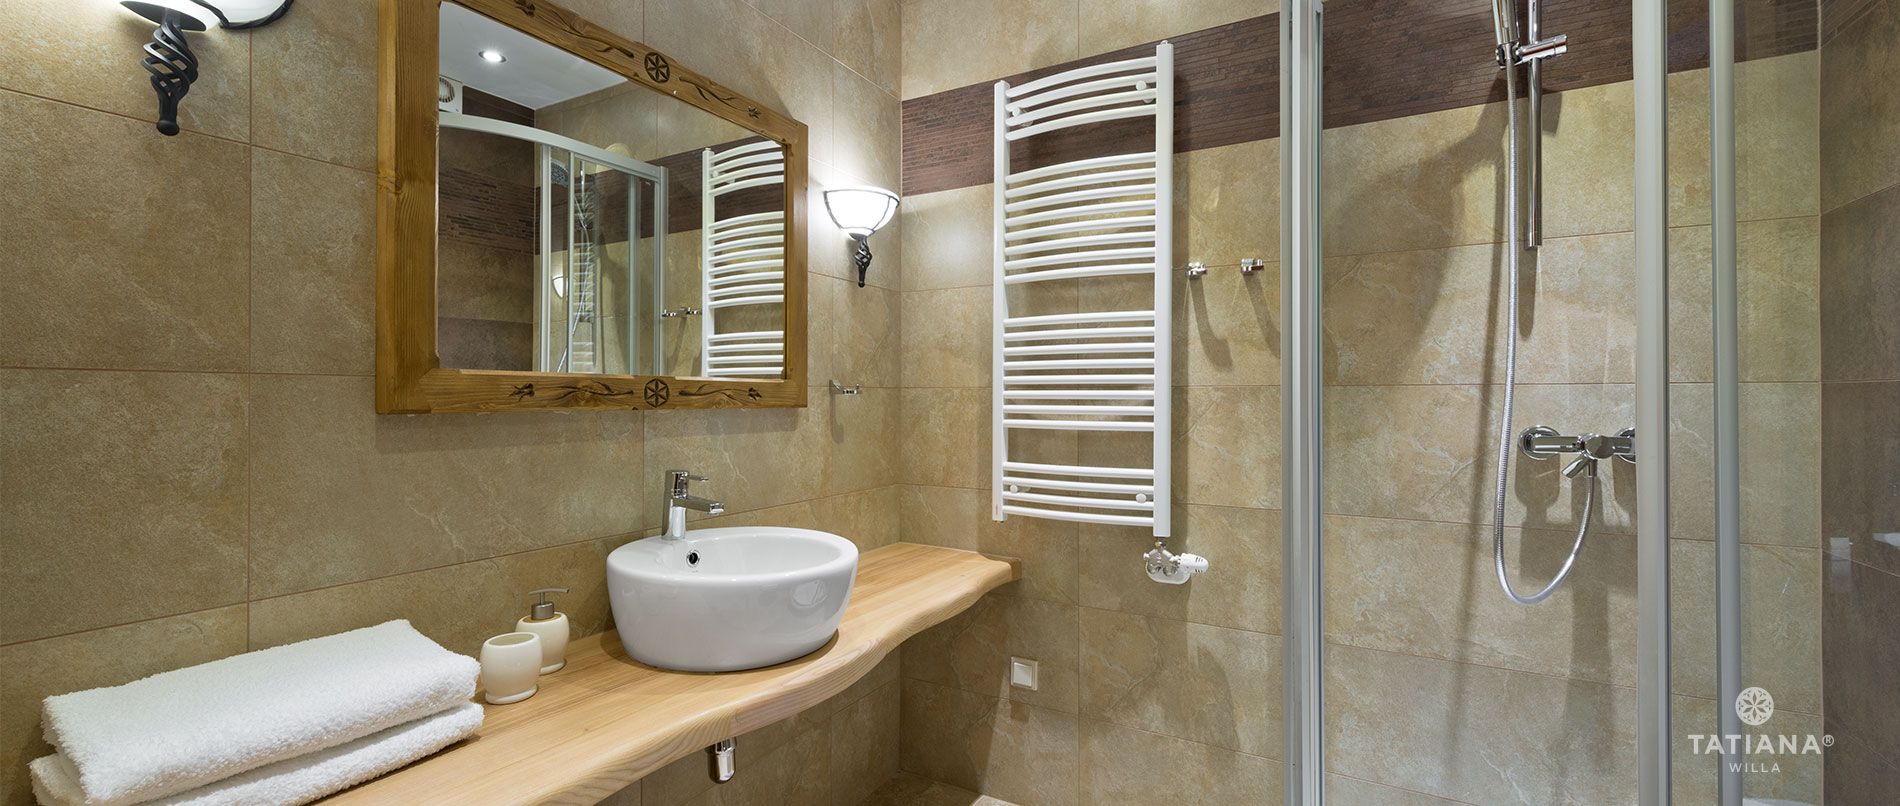 Apartament Lux10 - łazienka